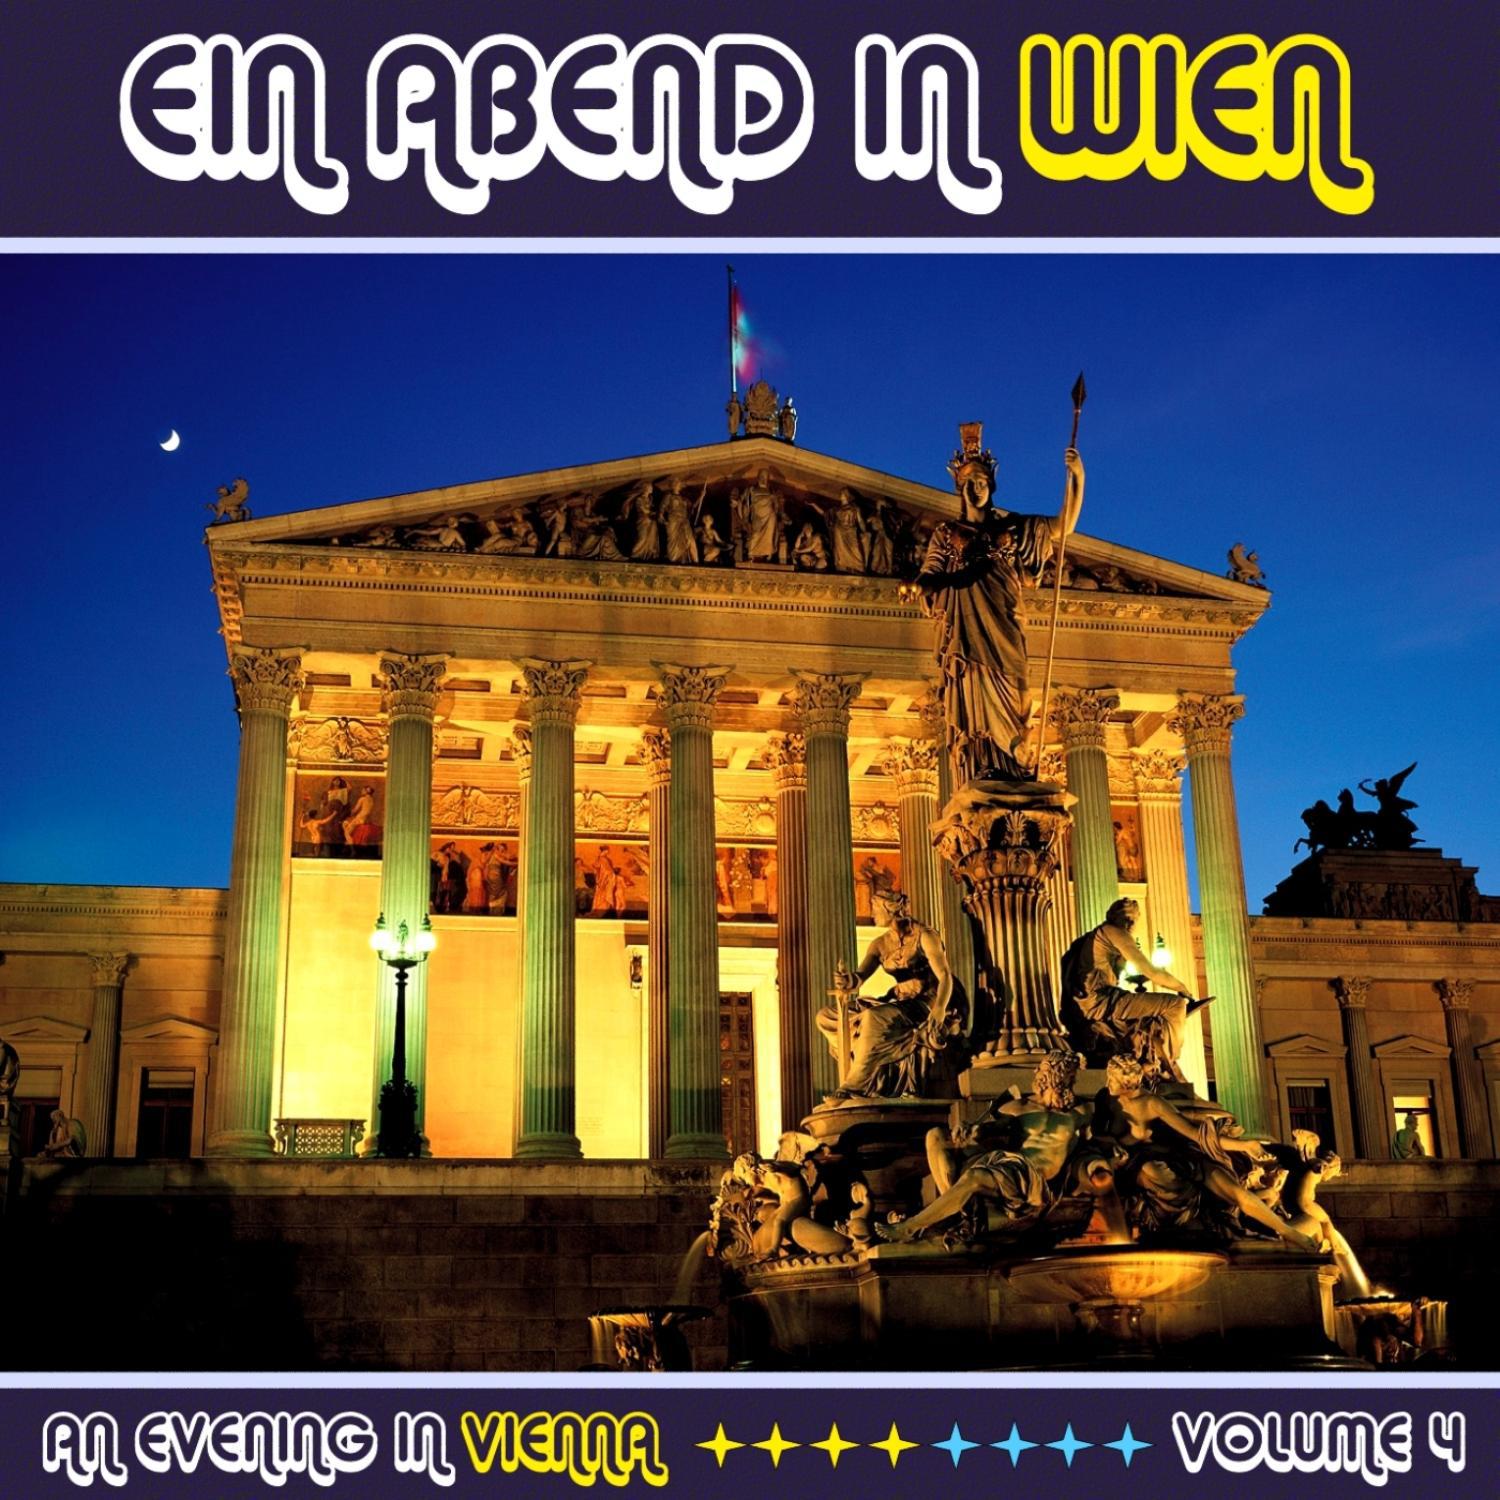 Ein Abend In Wien (An Evening in Vienna) Volume 4